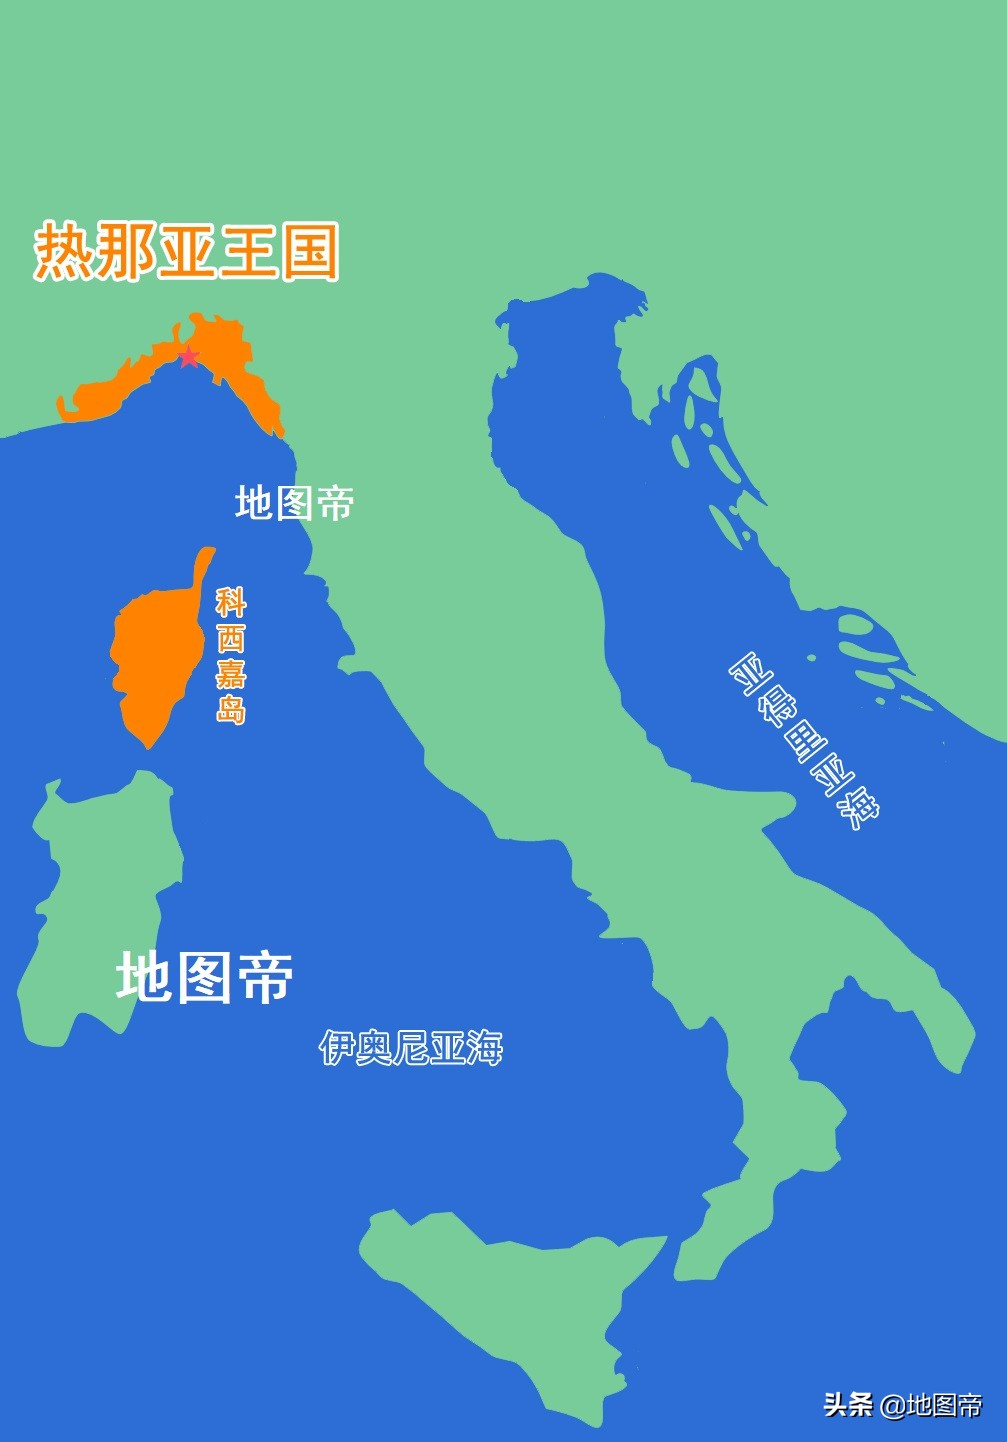 意大利的利古里亚大区形状像Ω(科西嘉岛曾是意大利的一部分，为何成了法国领土？)